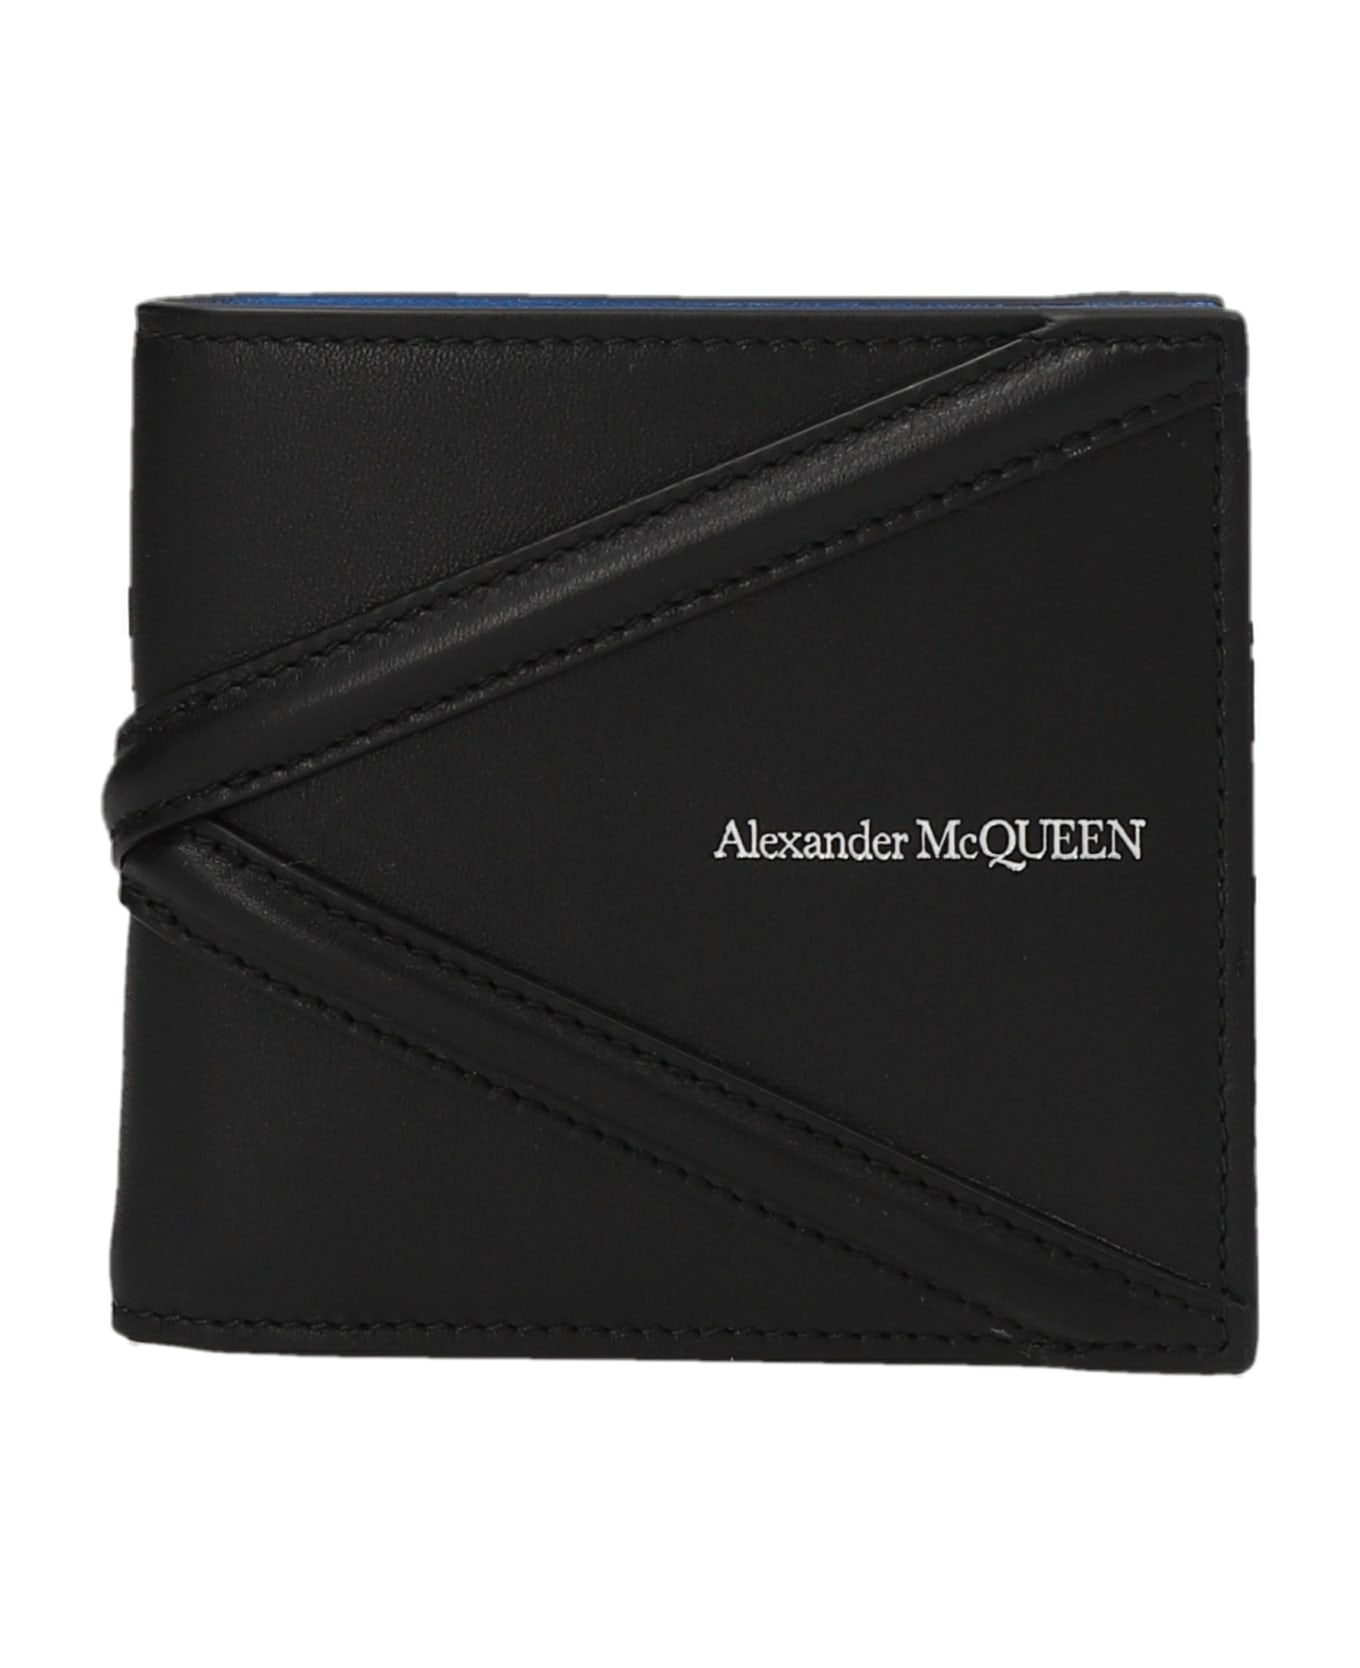 Alexander McQueen 'the Harness' Wallet - Black  